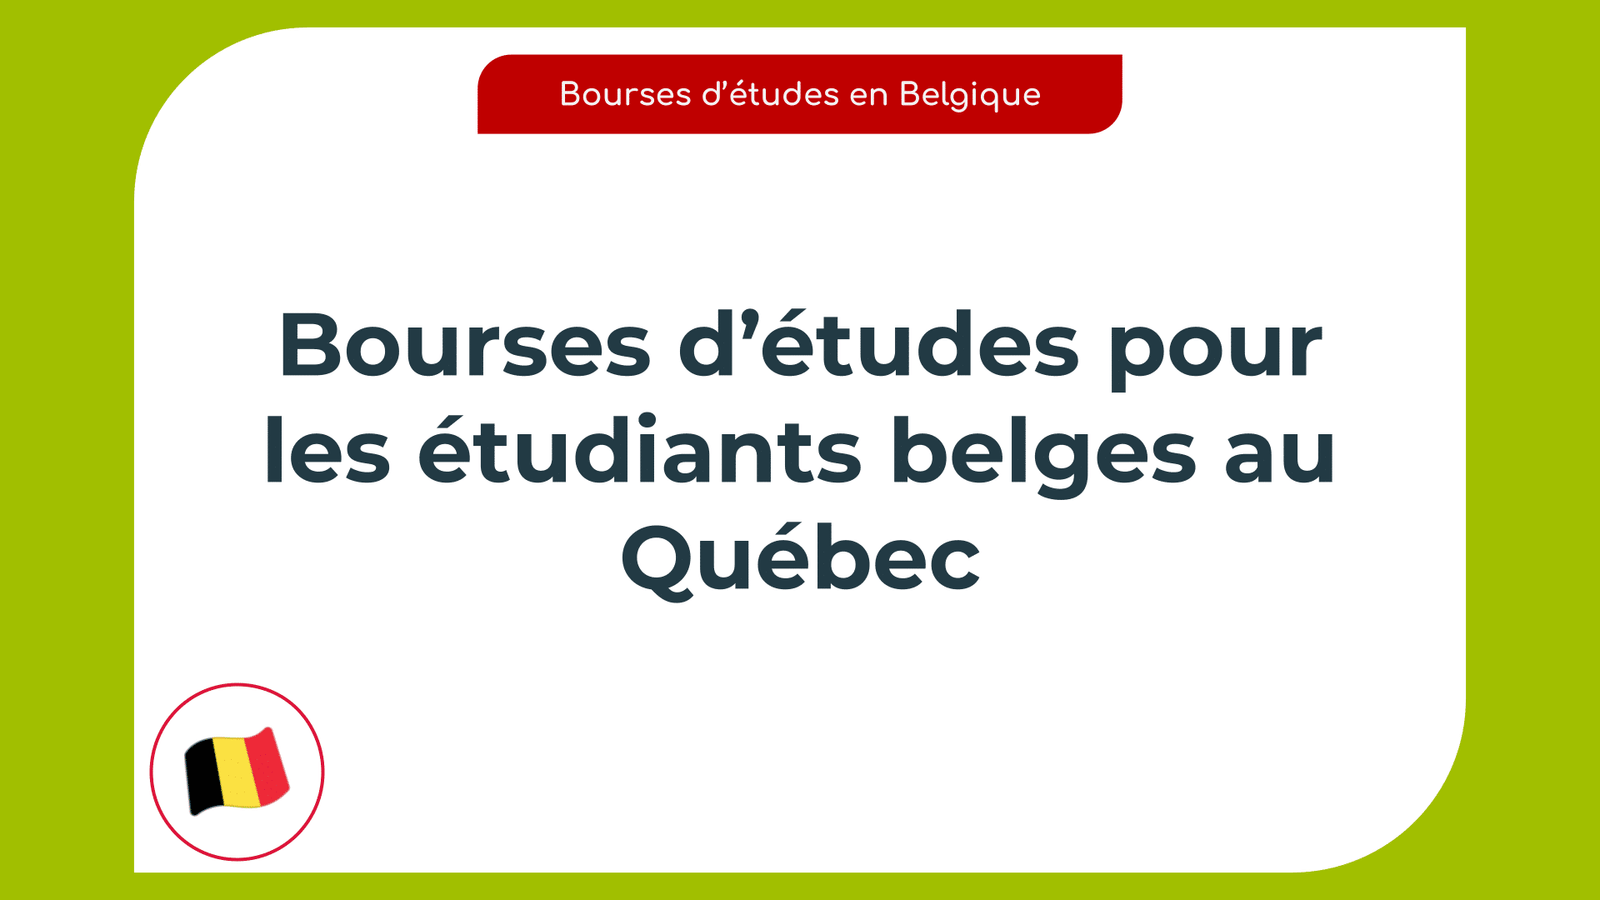 Bourses d’études pour les étudiants belges au Québec